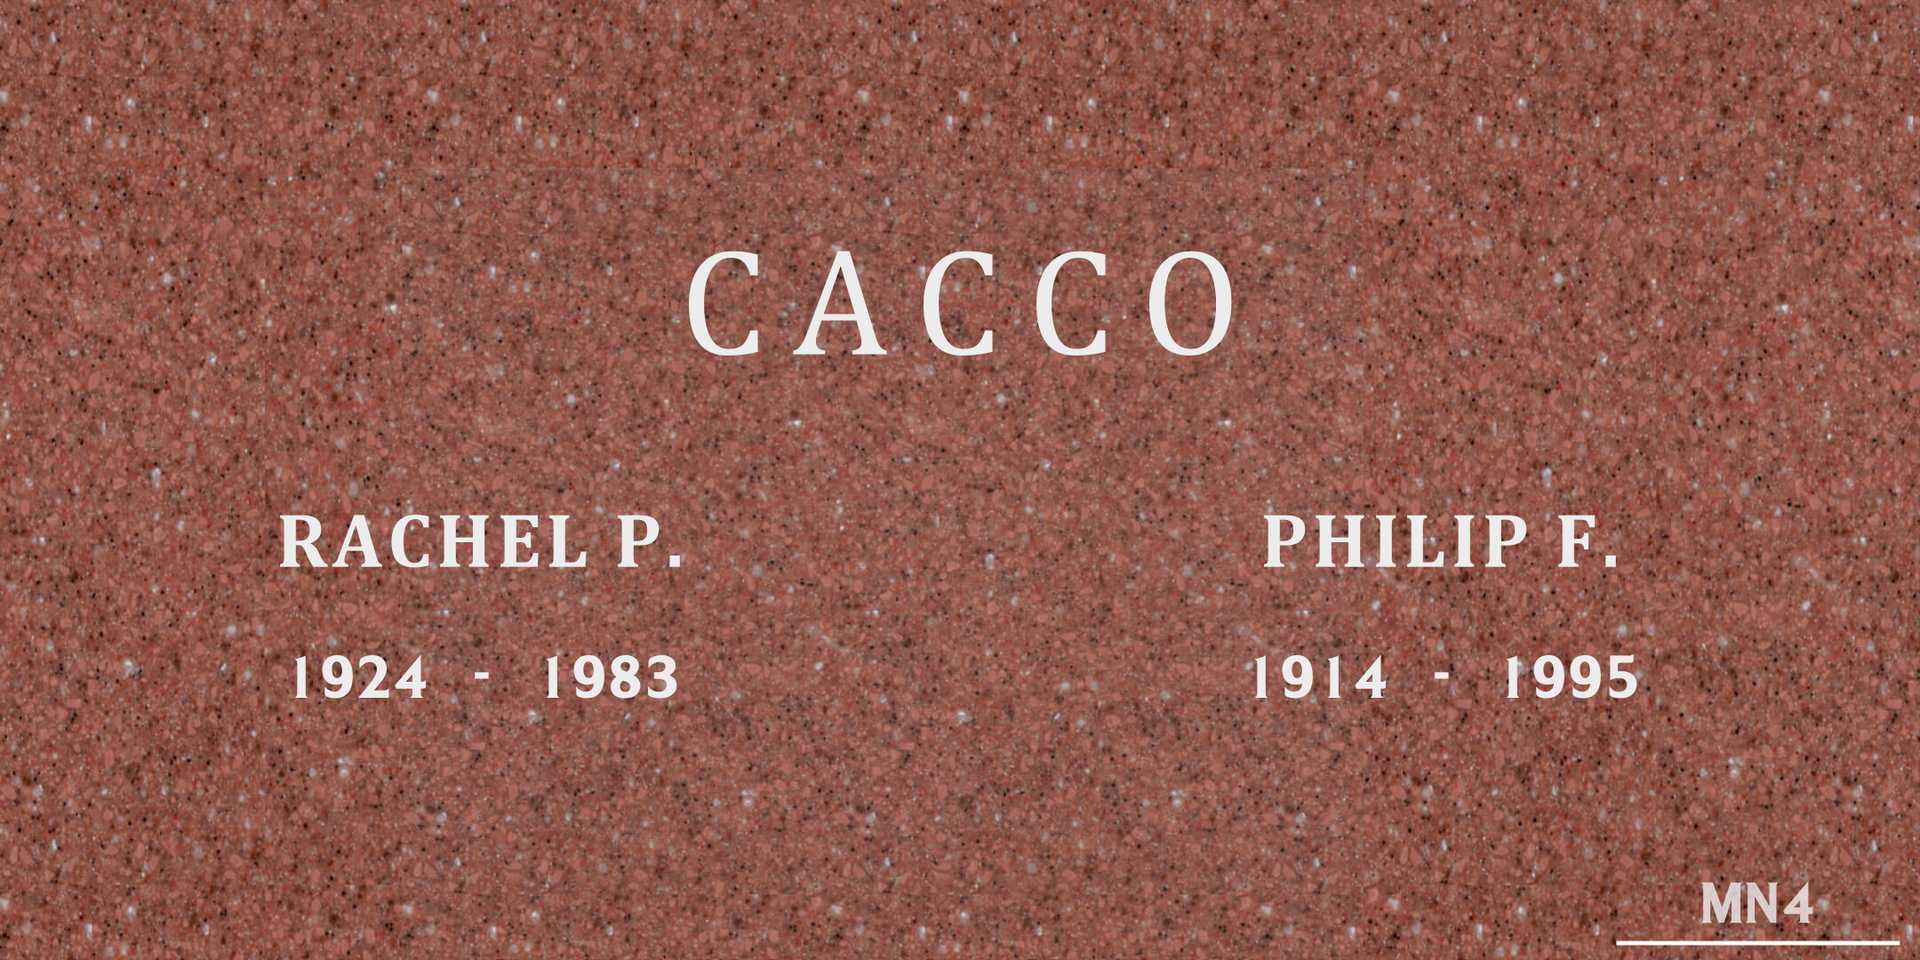 Philip F. Cacco's grave